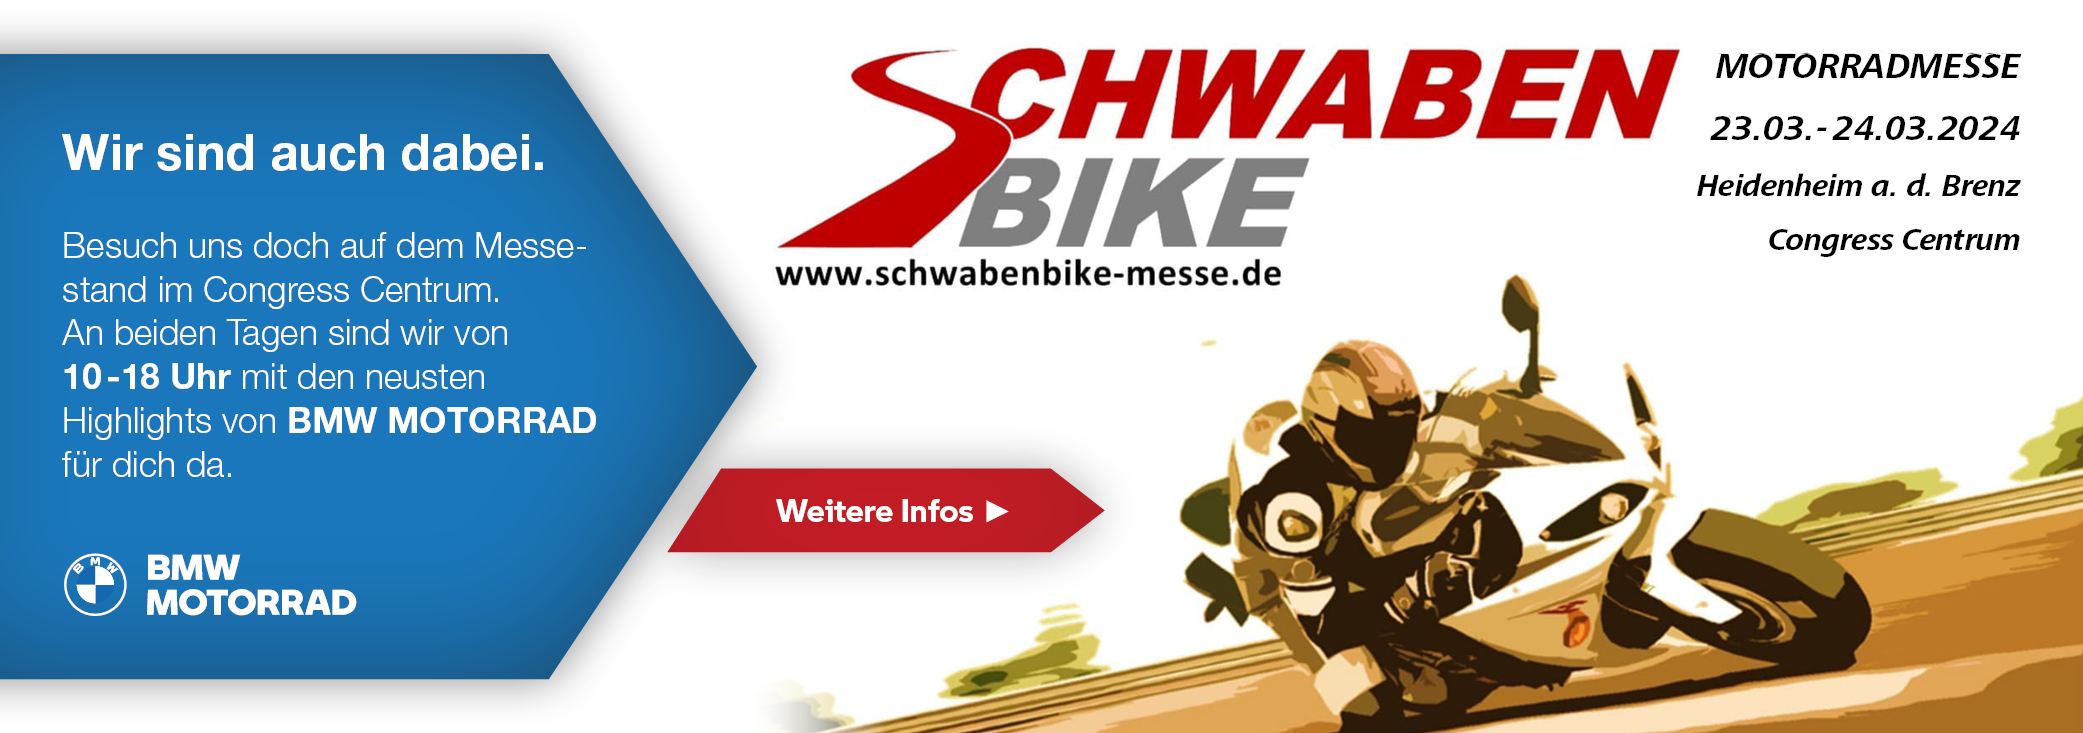 Hechler - Motorradmesse SchwabenBike im CC-HDH 2024